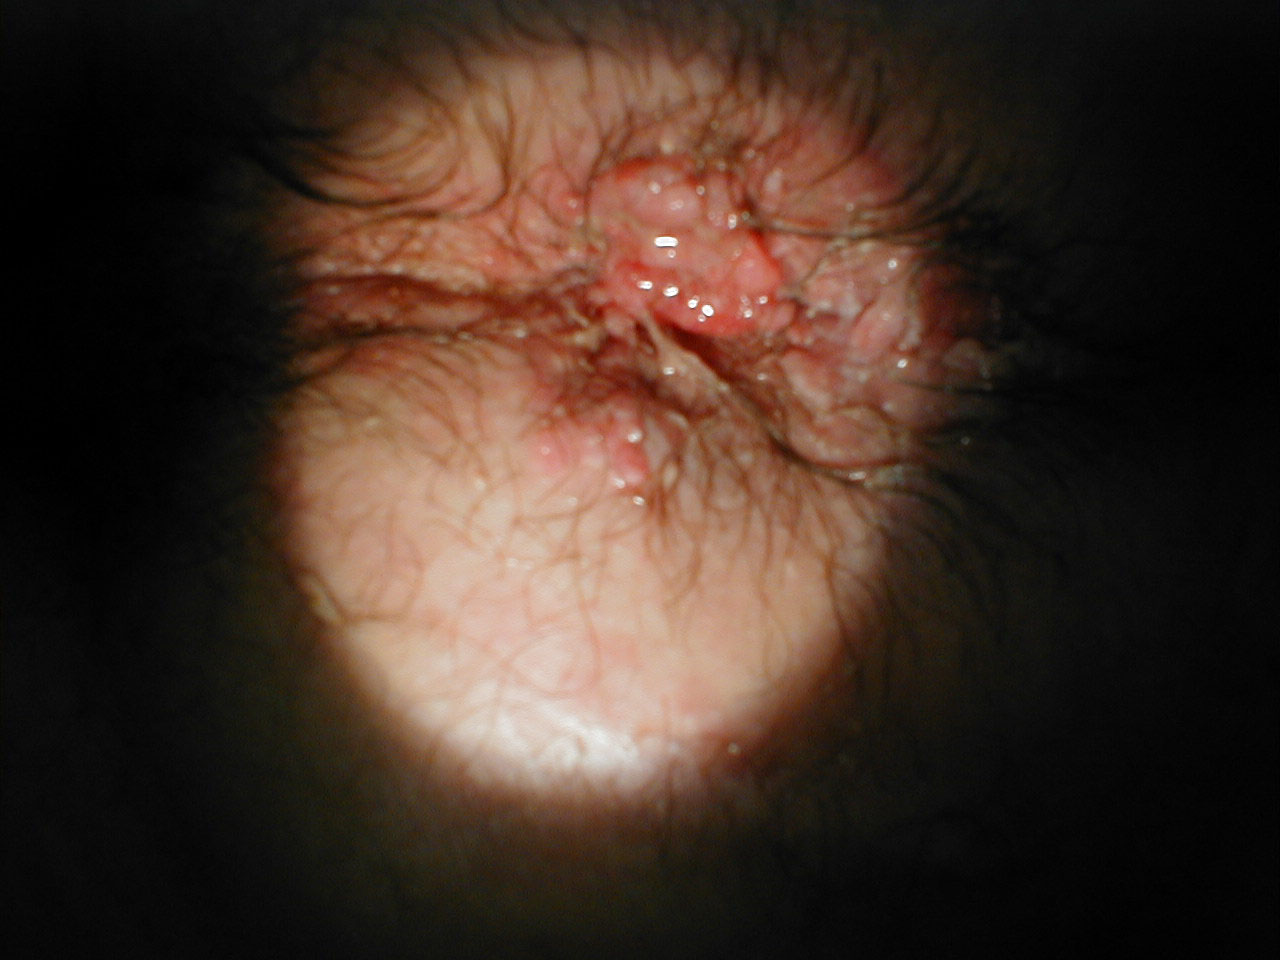 Perianal Condyloma Acuminata: Extensive lesions surrounding anus.